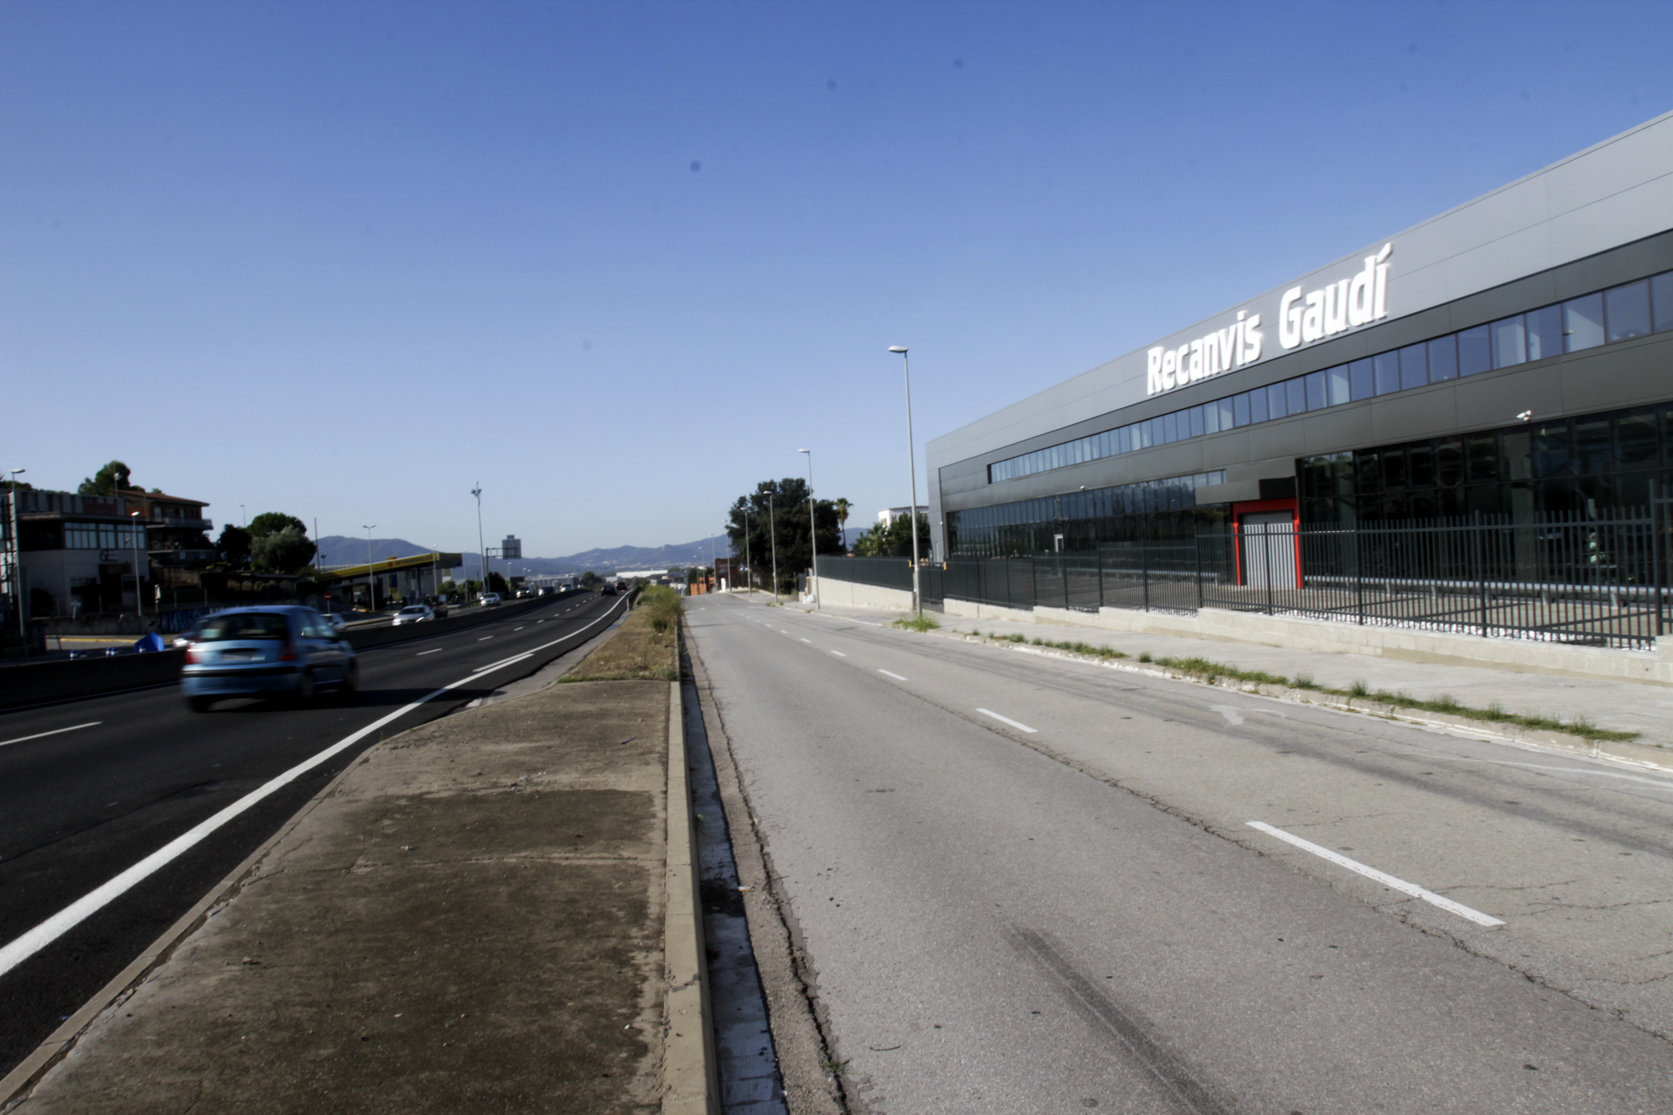 L'empresa opera des d'unes instal·lacions a Lliçà de Vall situades a tocar de la C-17